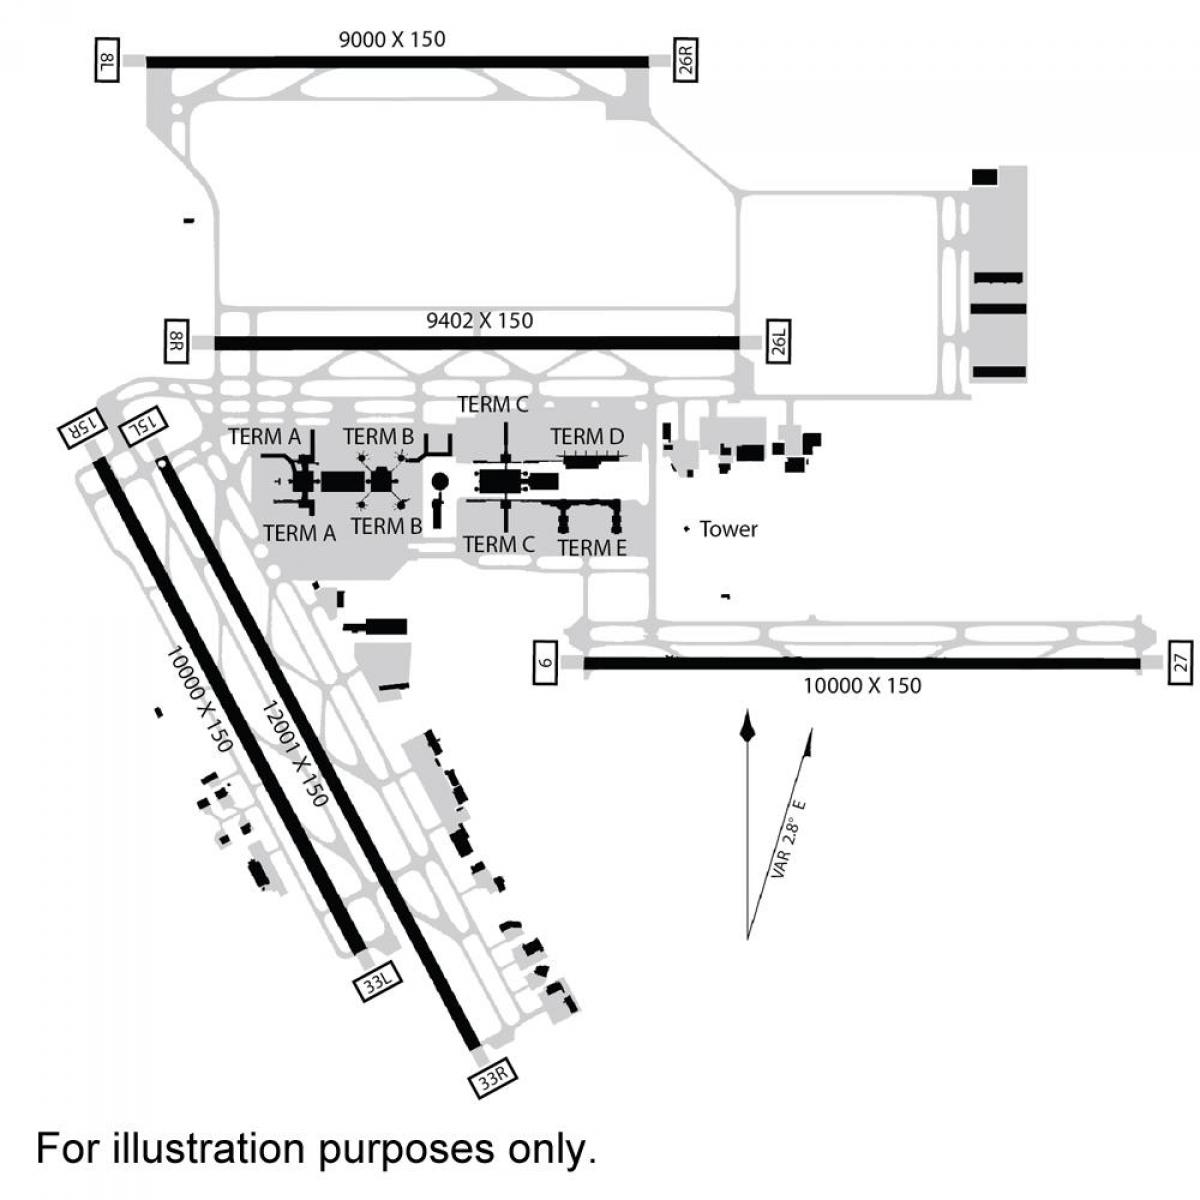 Ջորջ Բուշը Միջազգային օդանավակայանը քարտեզի վրա